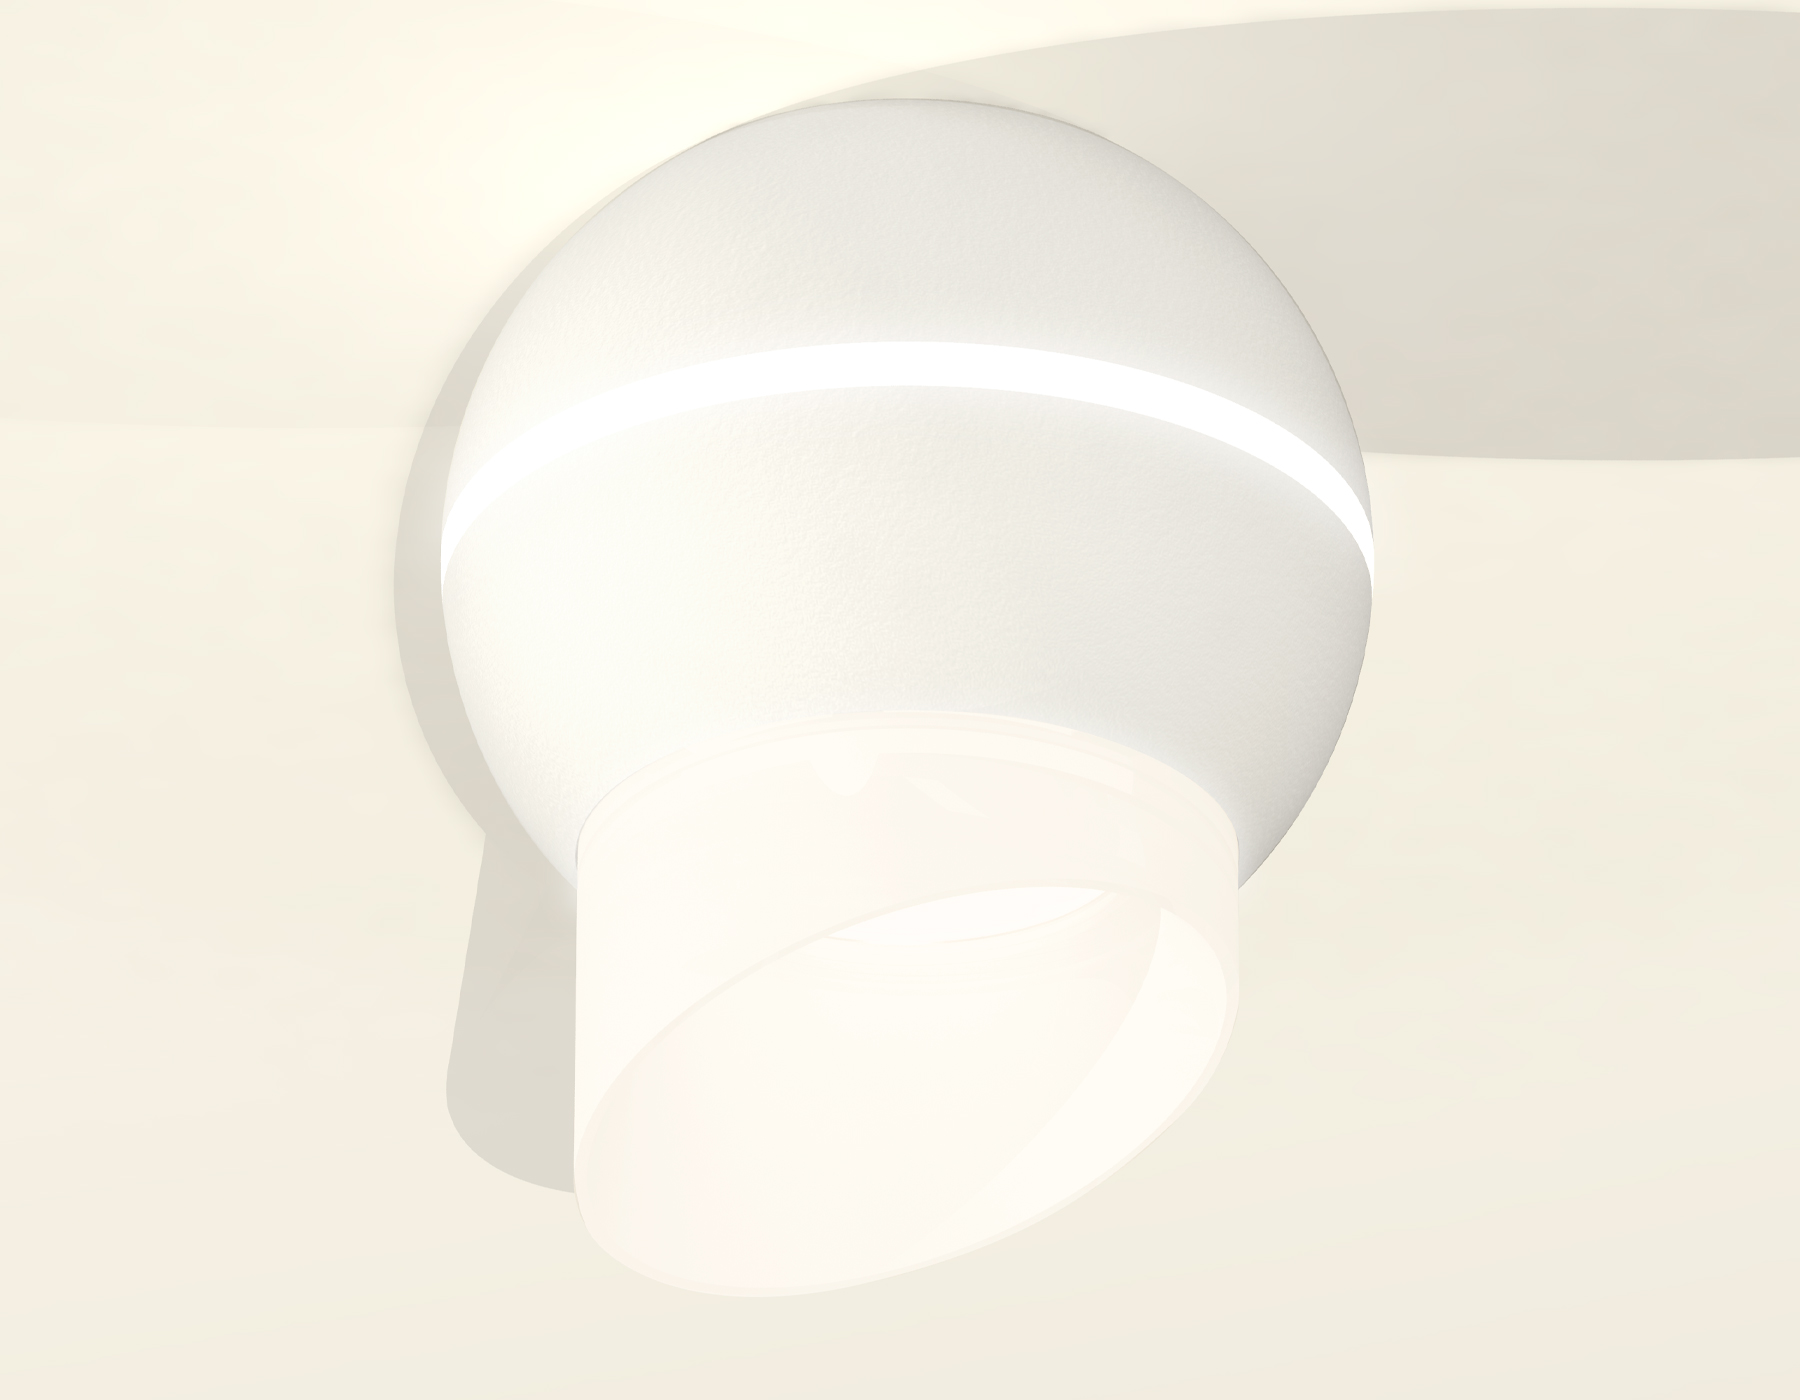 Накладной светильник с дополнительной подсветкой Ambrella Light Techno XS1101043 (C1101, N7175) в #REGION_NAME_DECLINE_PP#